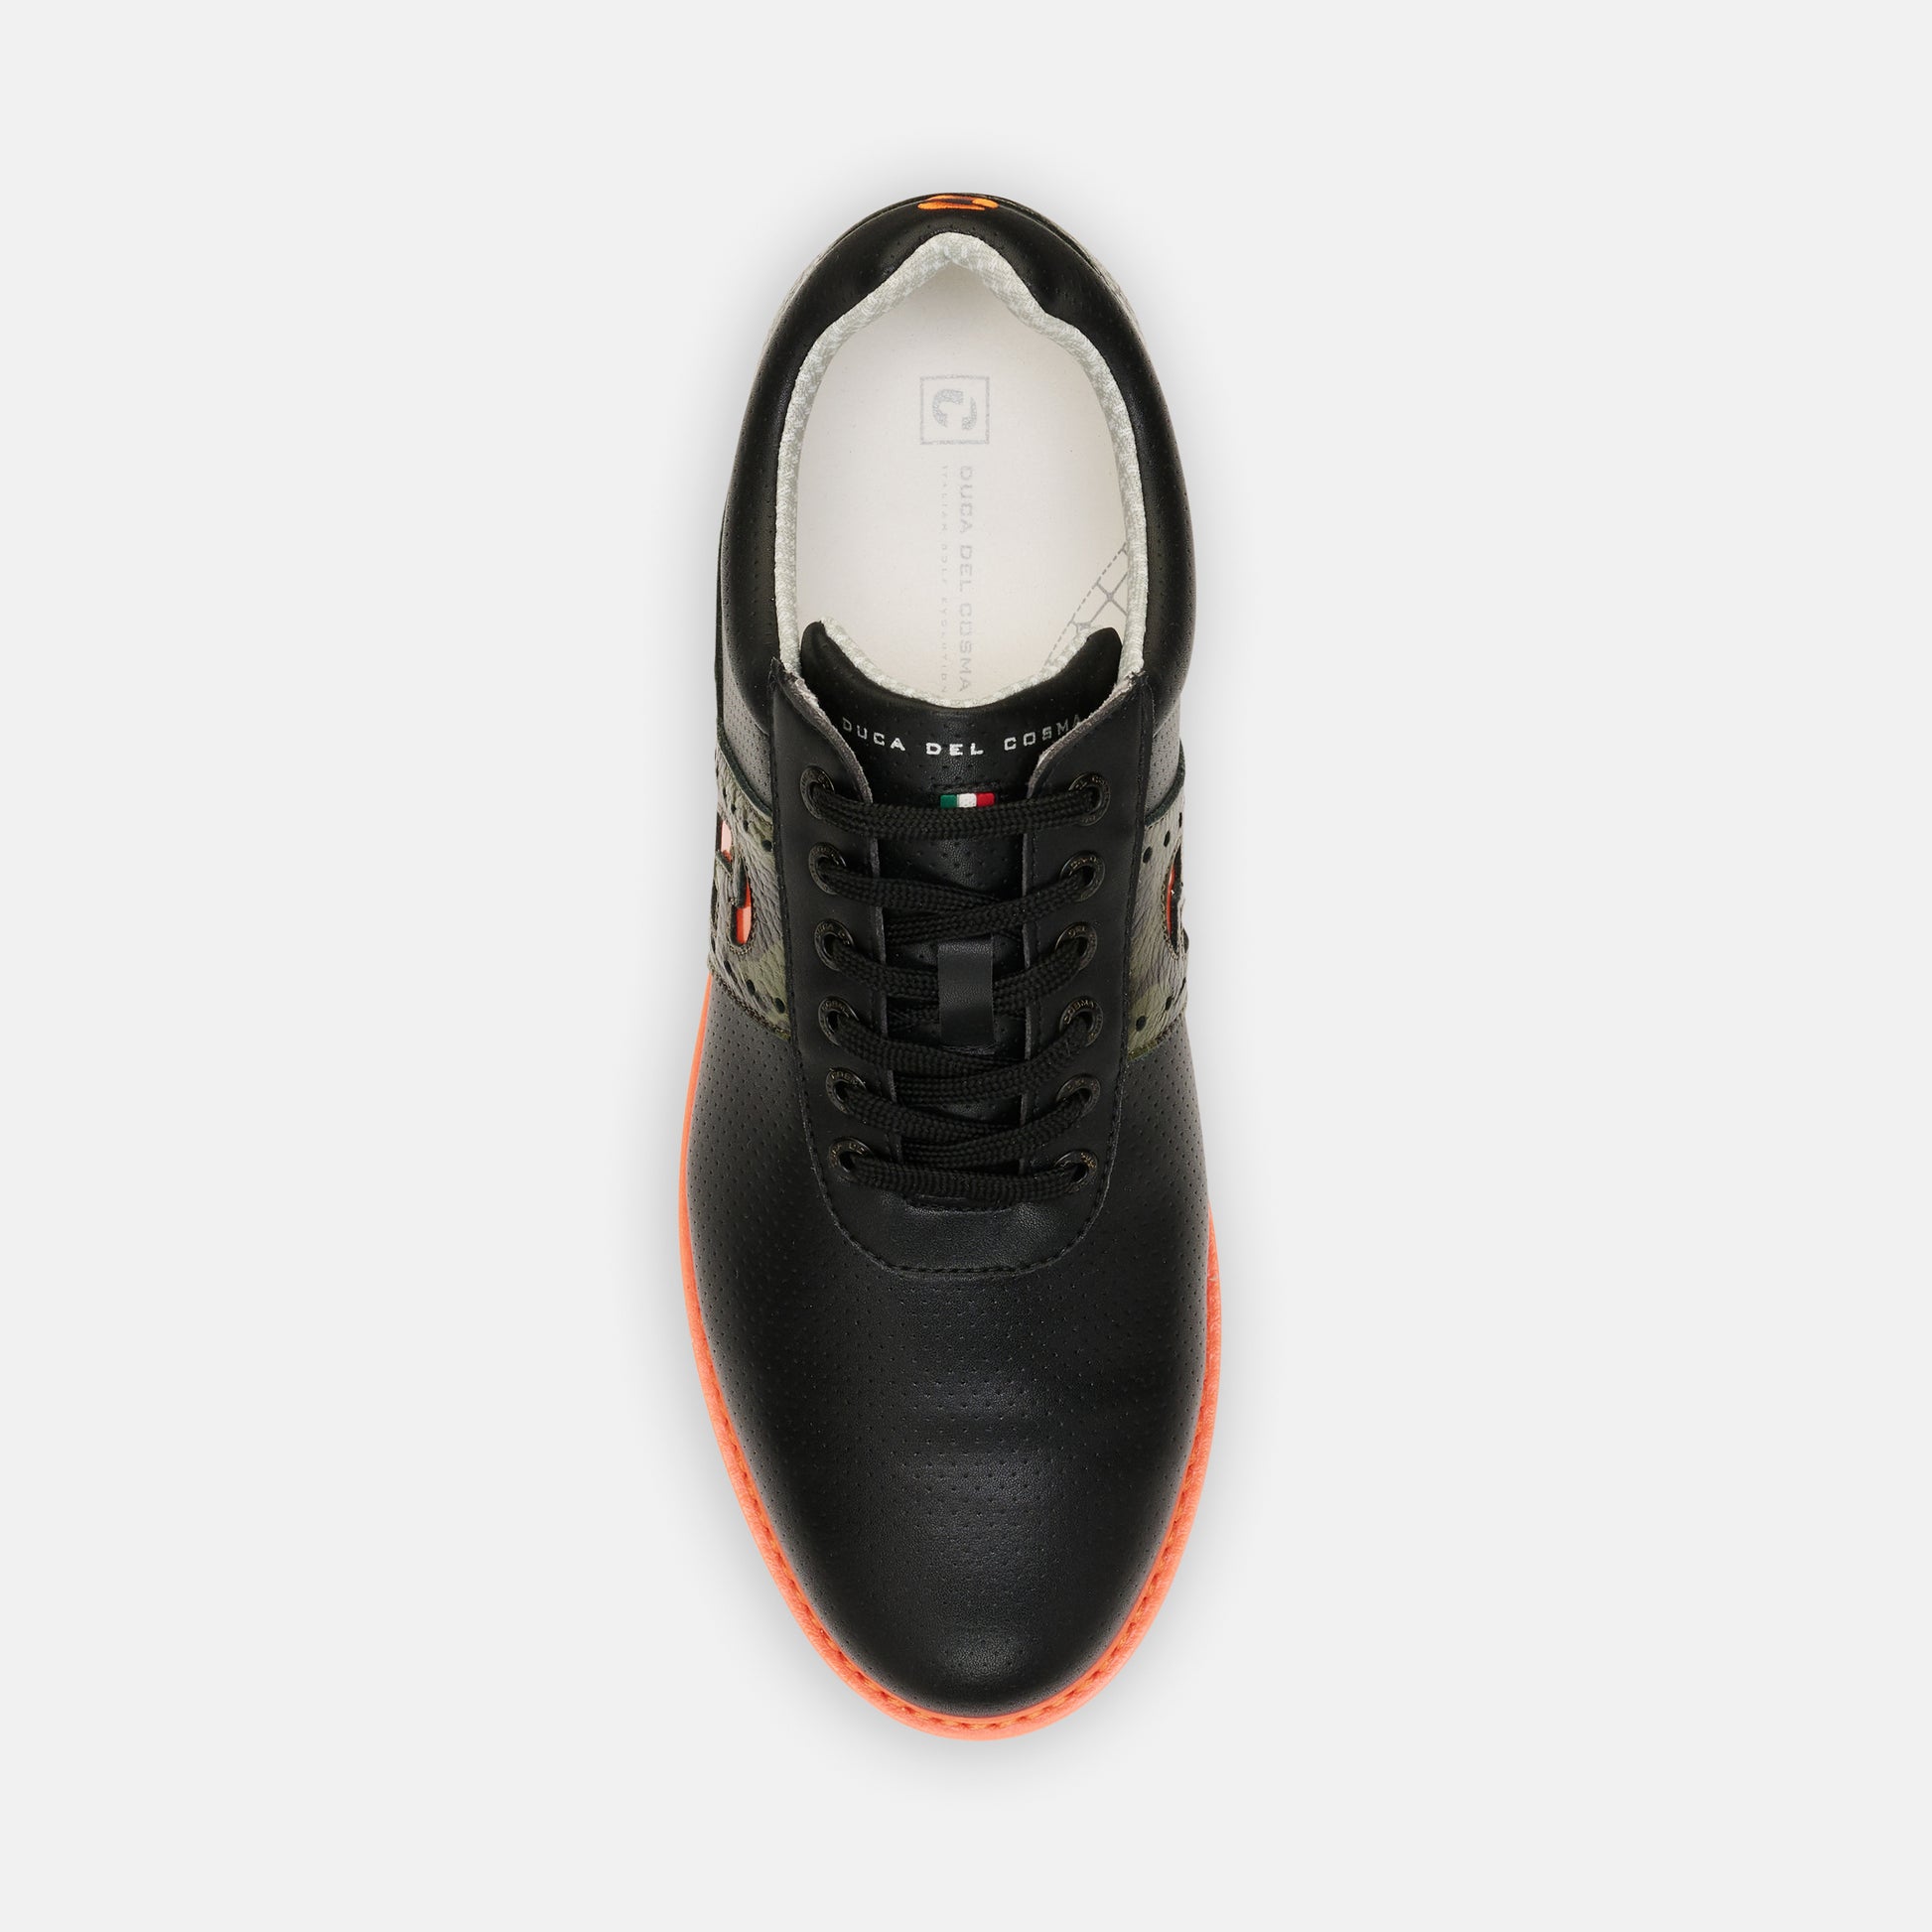 Joost Luiten Men's Black Golf Shoe